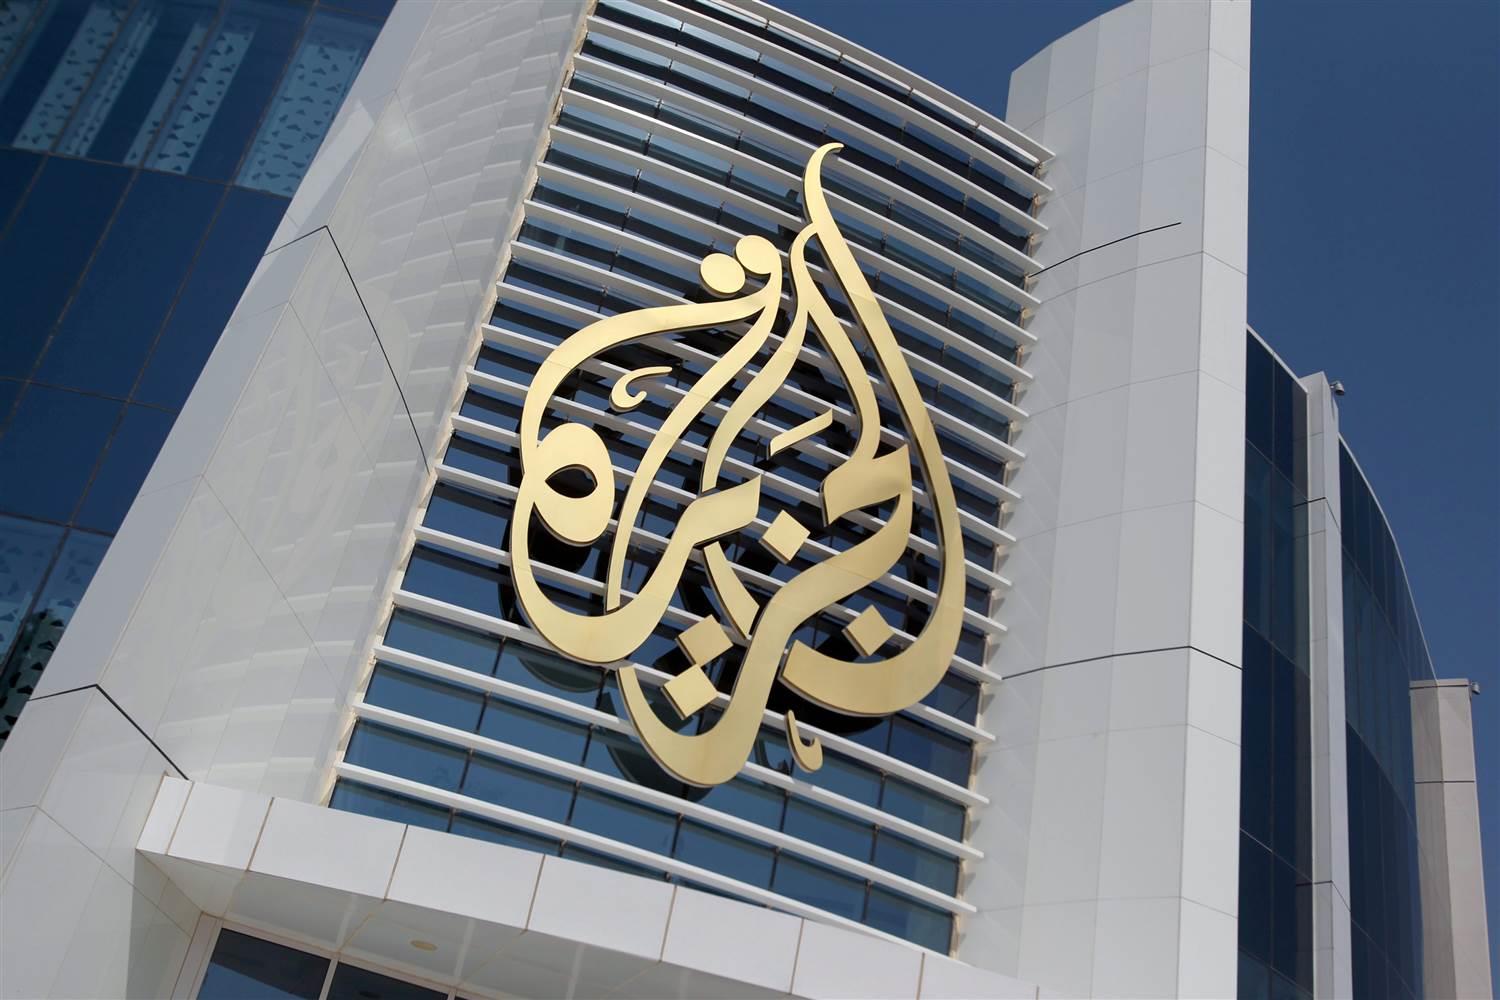  إغلاق مكتب قناة الجزيرة في السودان